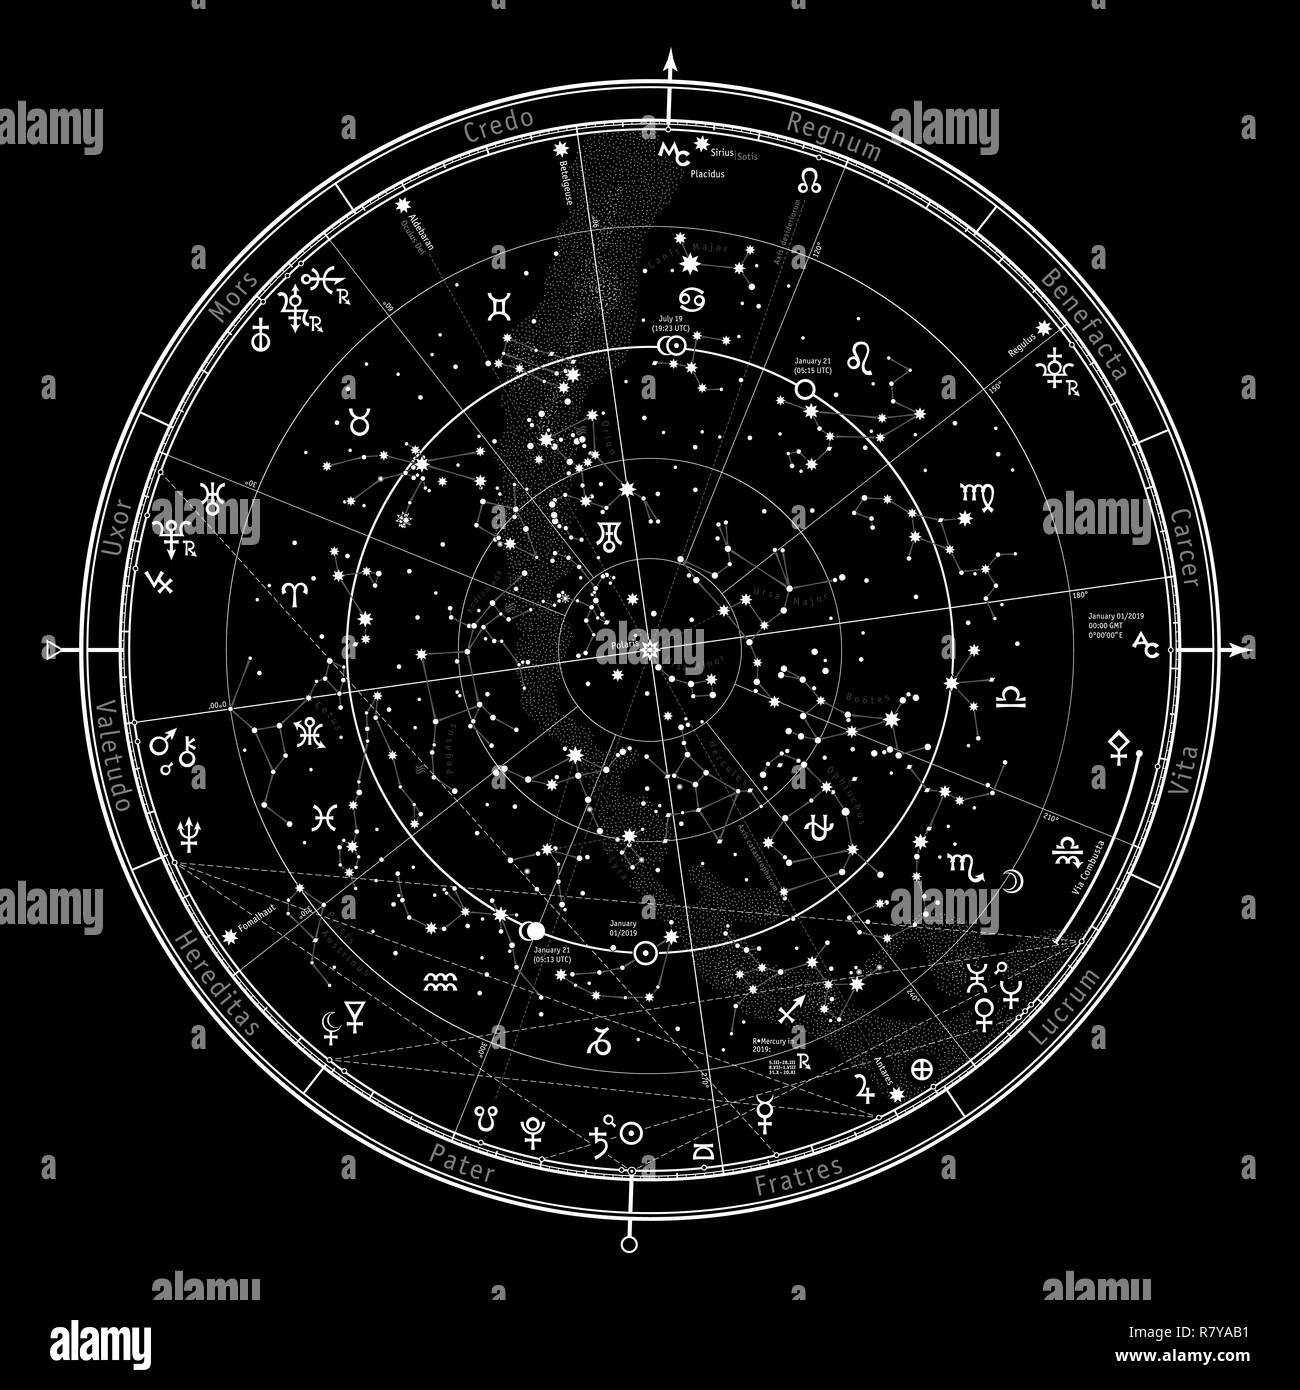 Astrologische Himmelskörper Karte der nördlichen Halbkugel: Horoskop auf 2019. Detaillierte Übersicht Chart mit Symbolen und Zeichen des Tierkreis, Planeten, Asteroiden etс. Stockfoto